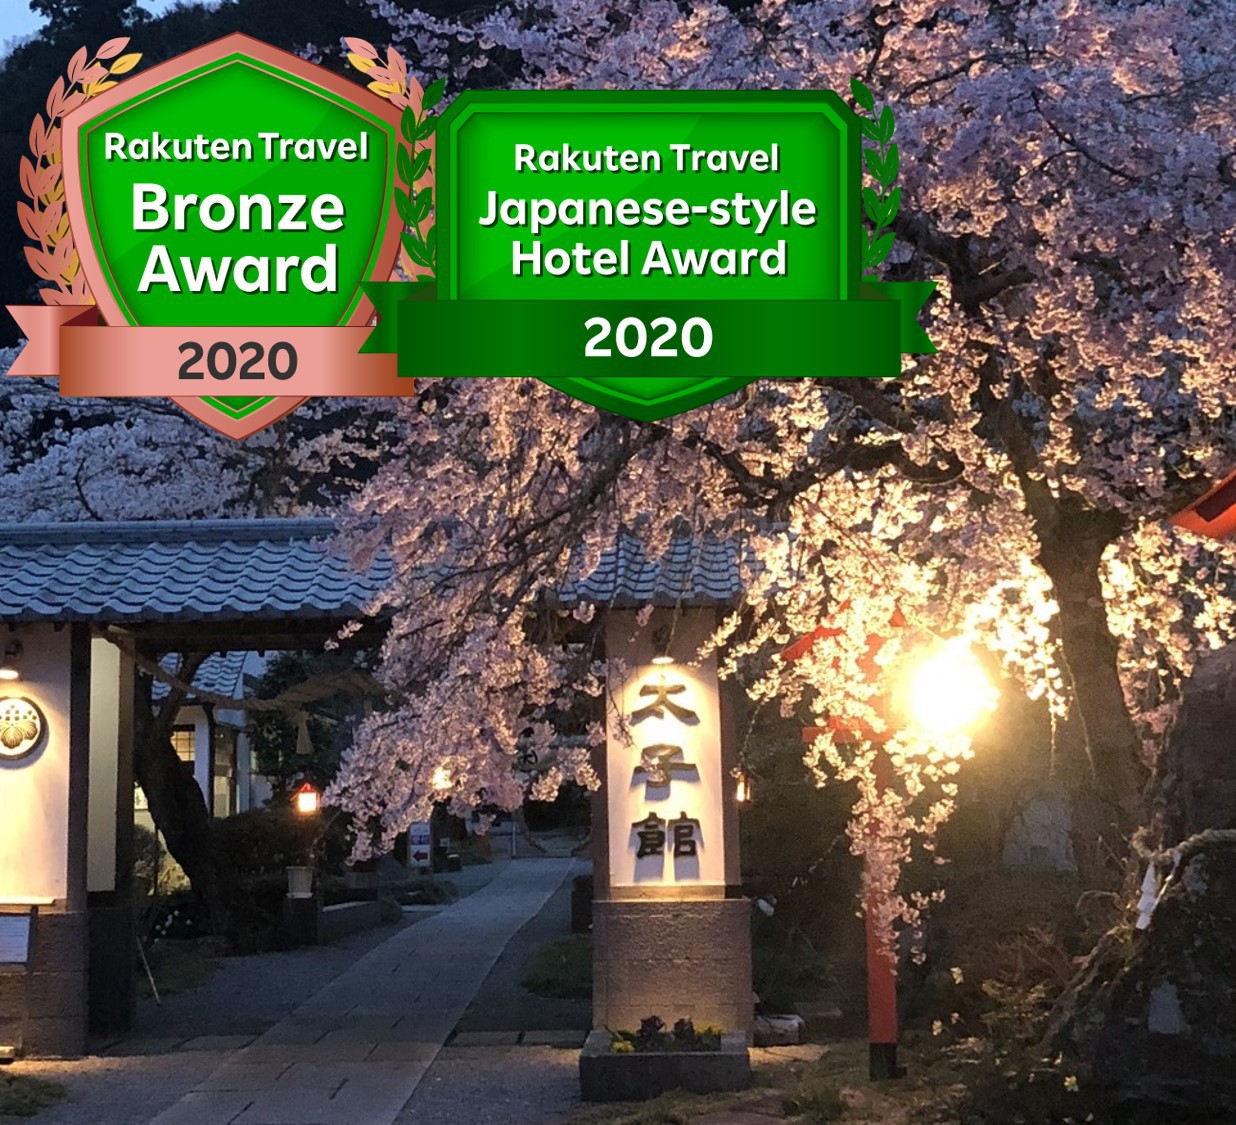 太平山で夜桜を楽しんだ後に、温泉宿に泊まりたいですが、30分圏内でおすすめありますか？